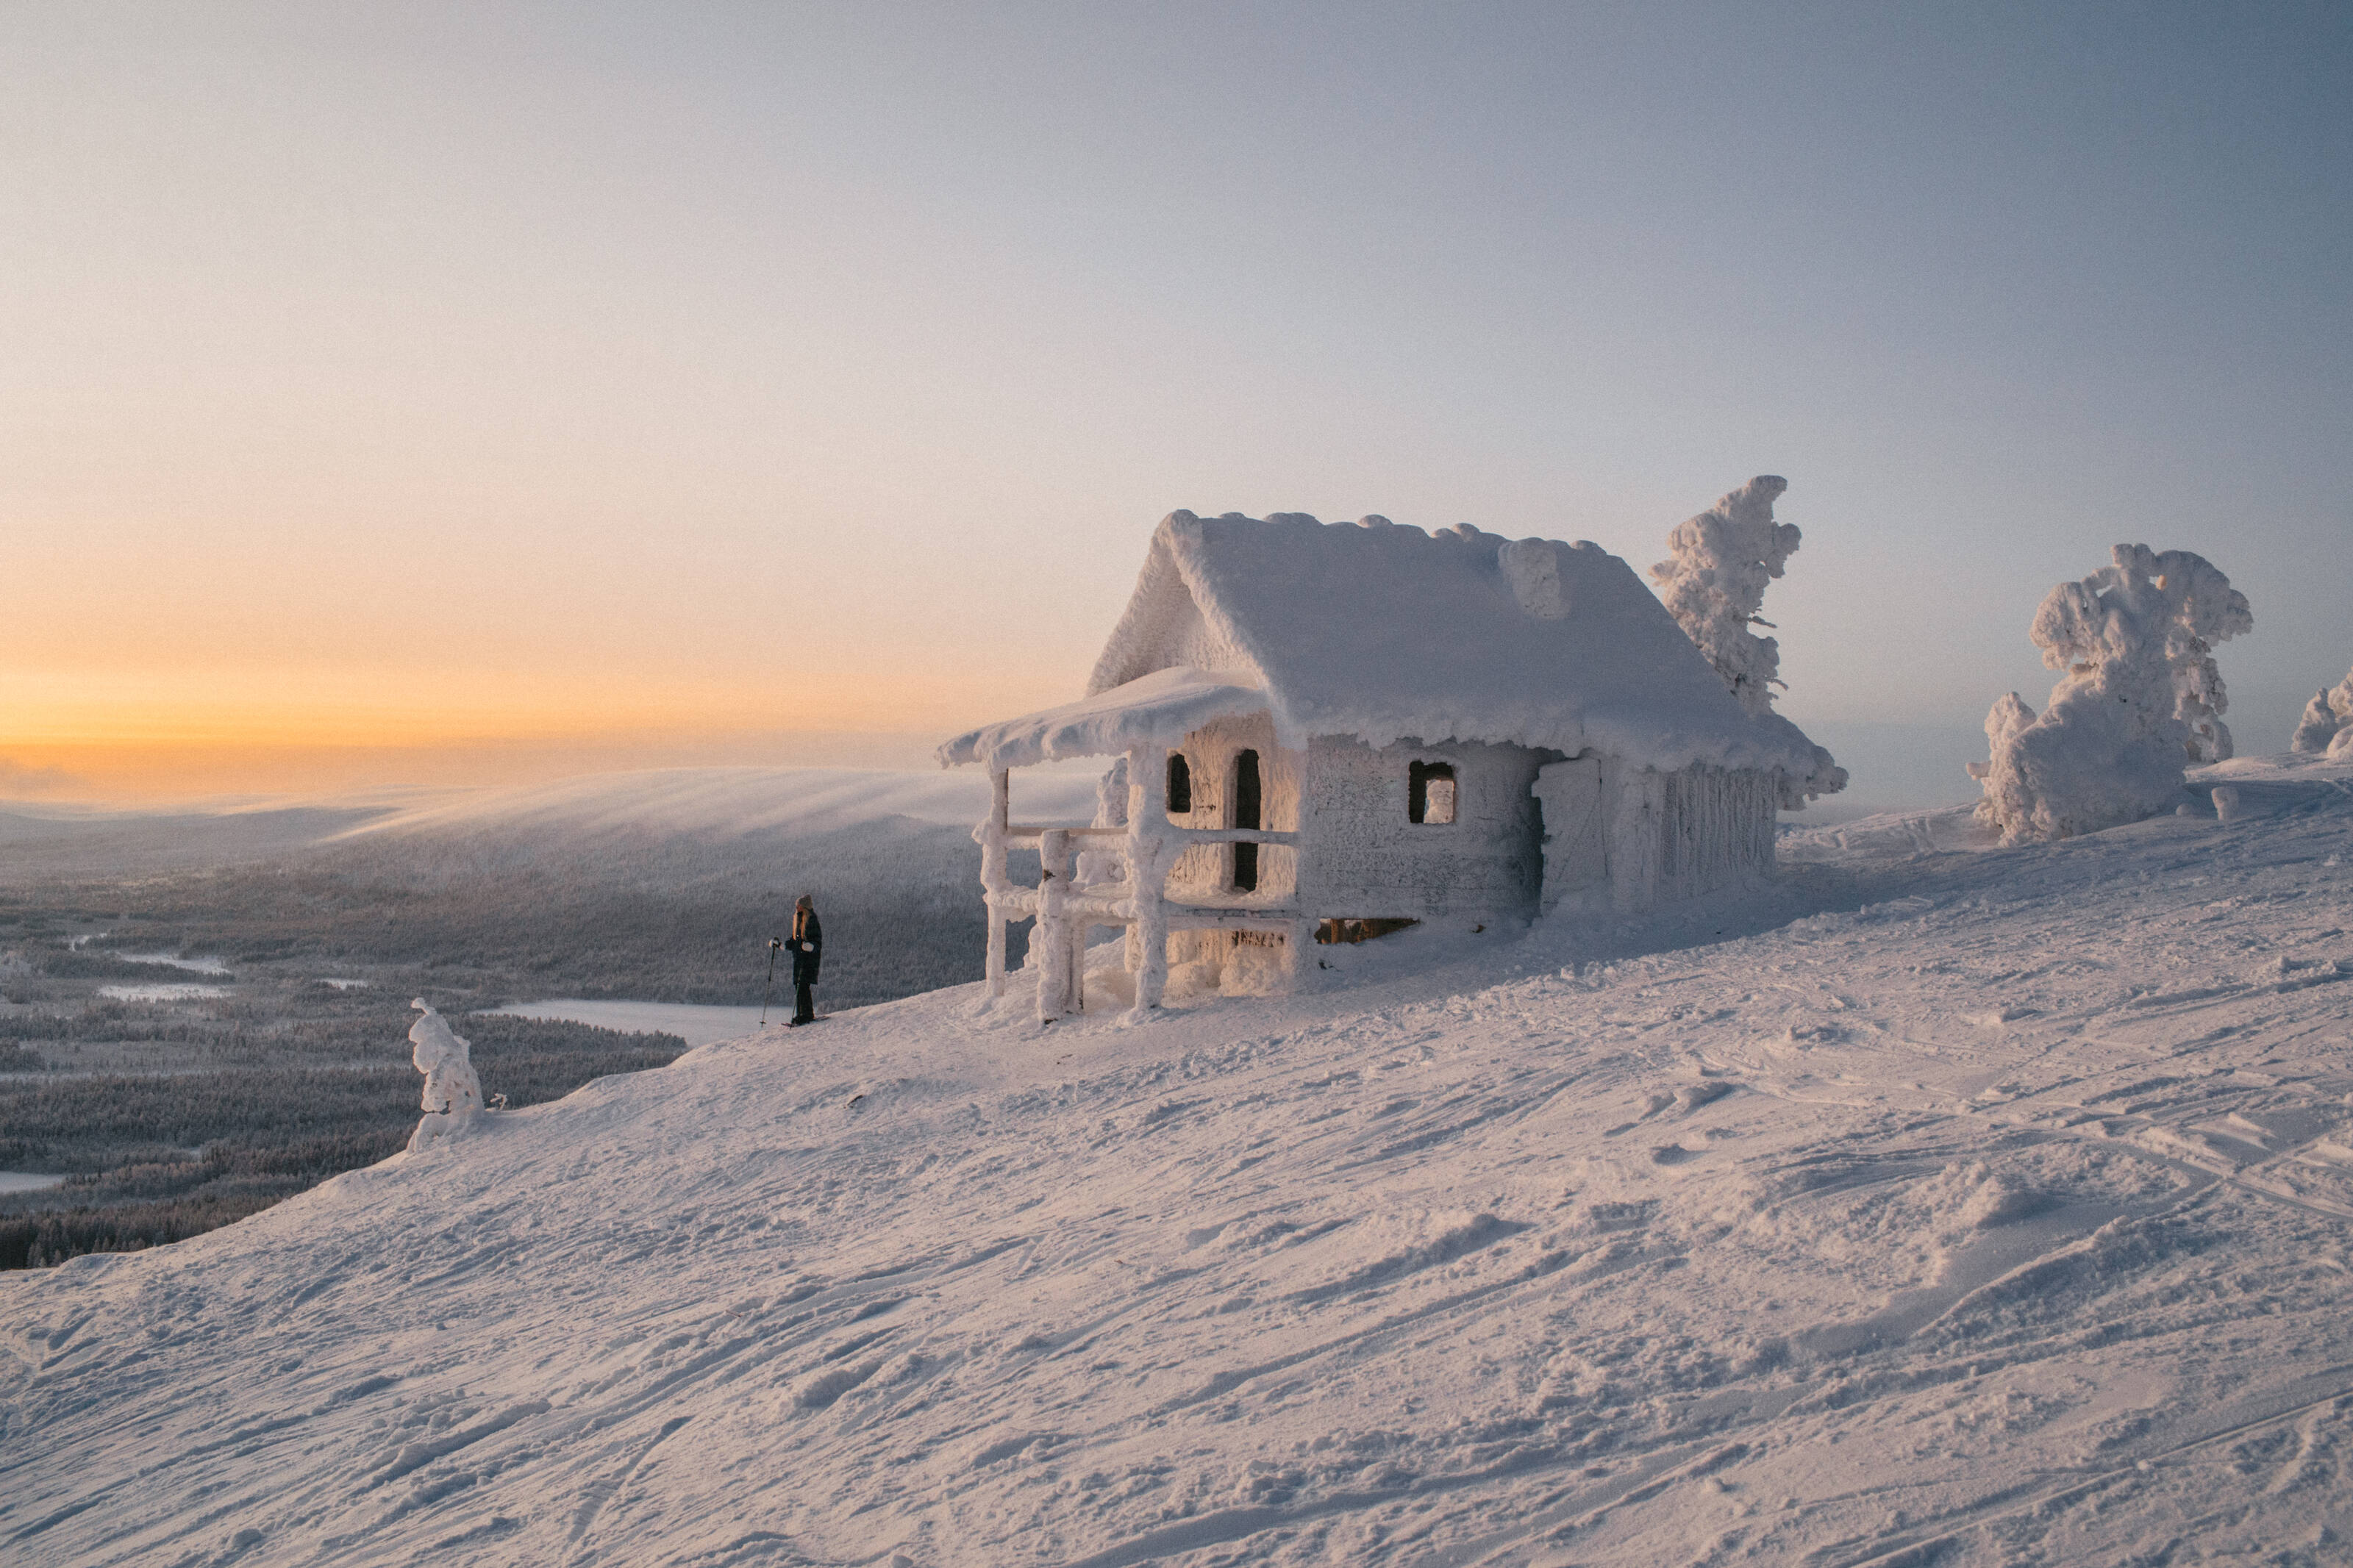 Una persona accanto a un rifugio completamente coperto di ghiaccio e neve in cima a una collina.